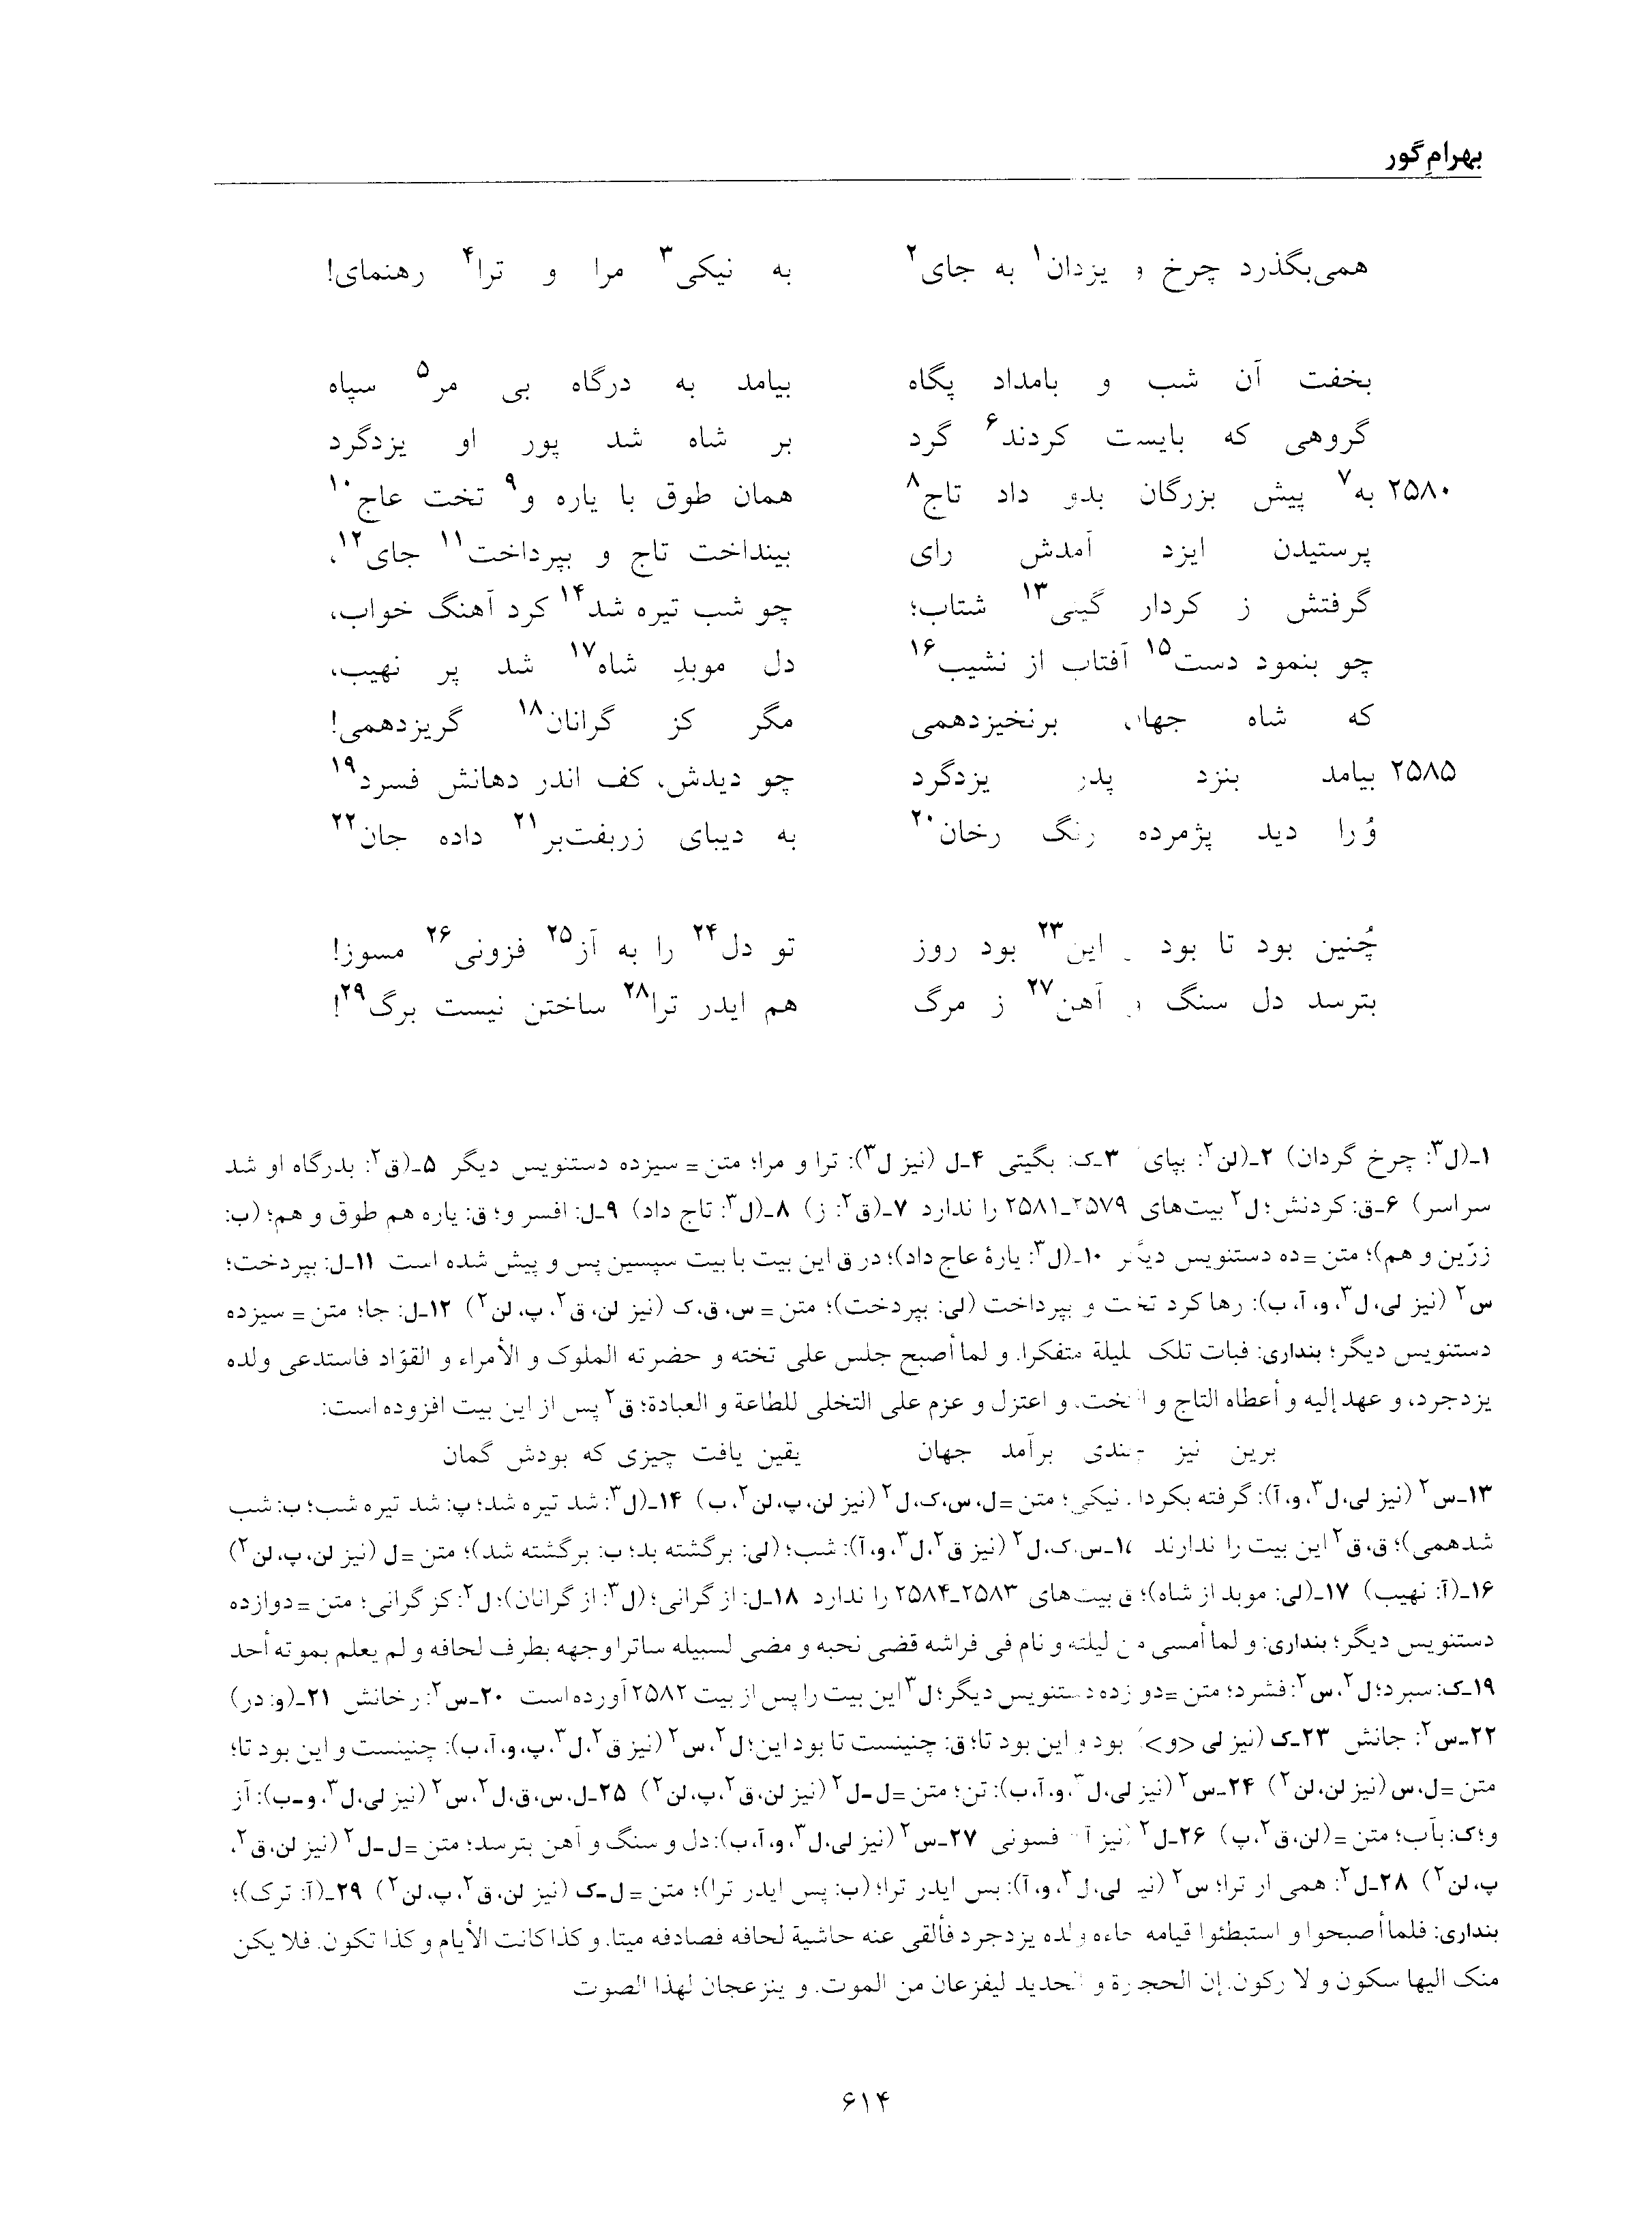 vol. 6, p. 614